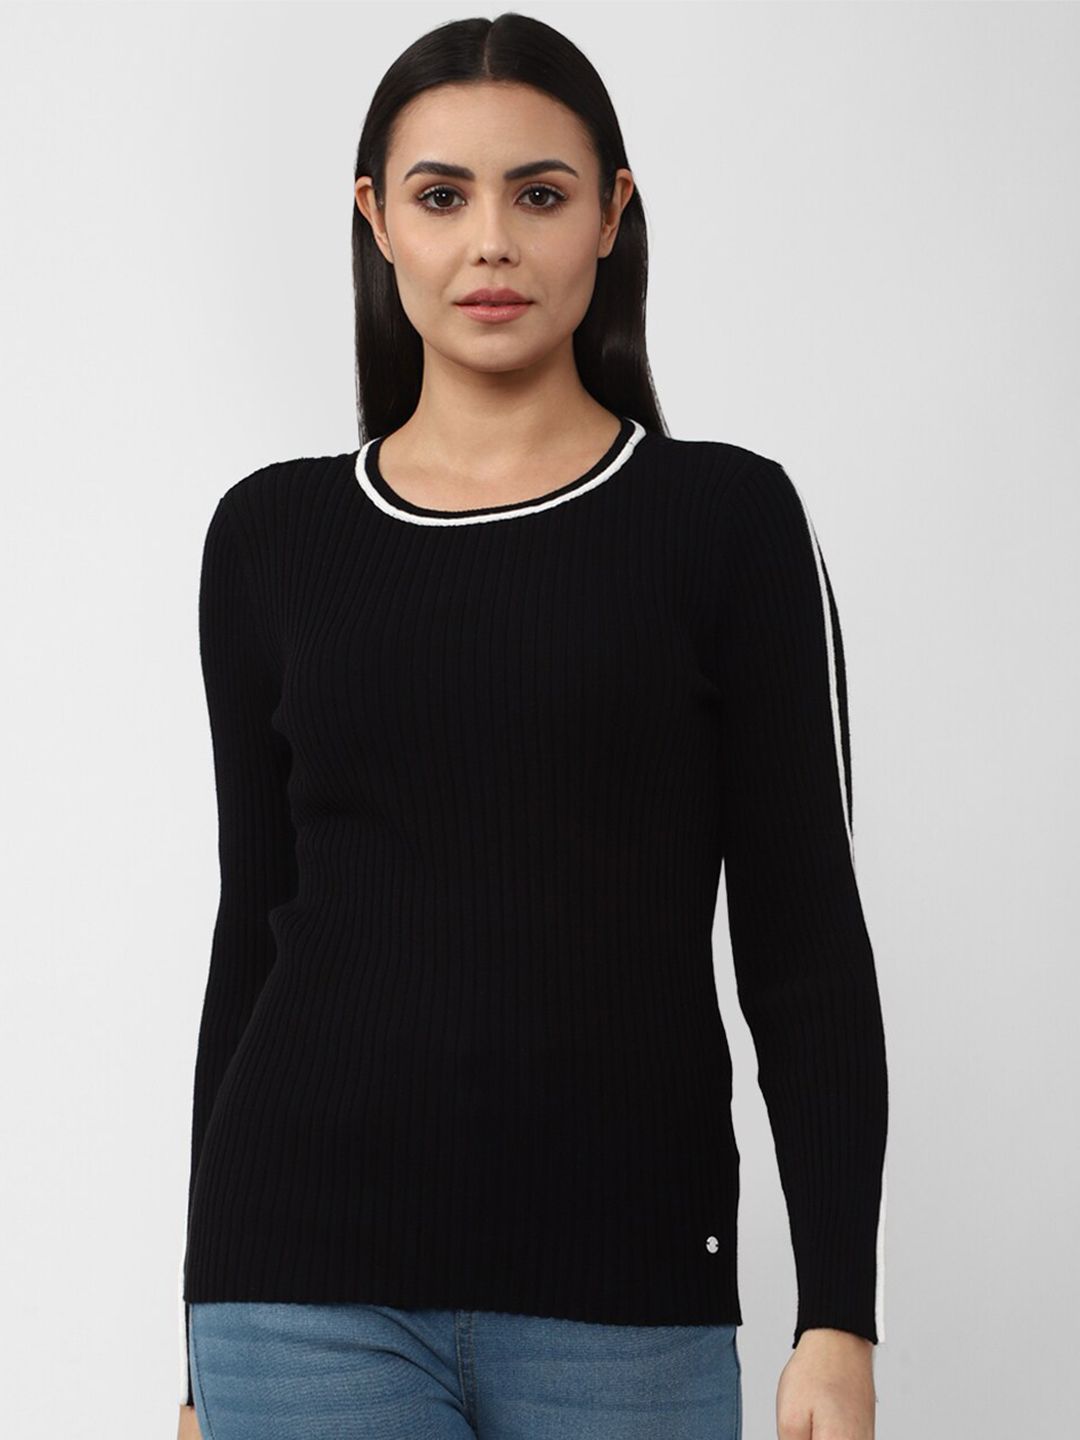 Van Heusen Woman Black Self Design Long Sleeve Slip Top Price in India